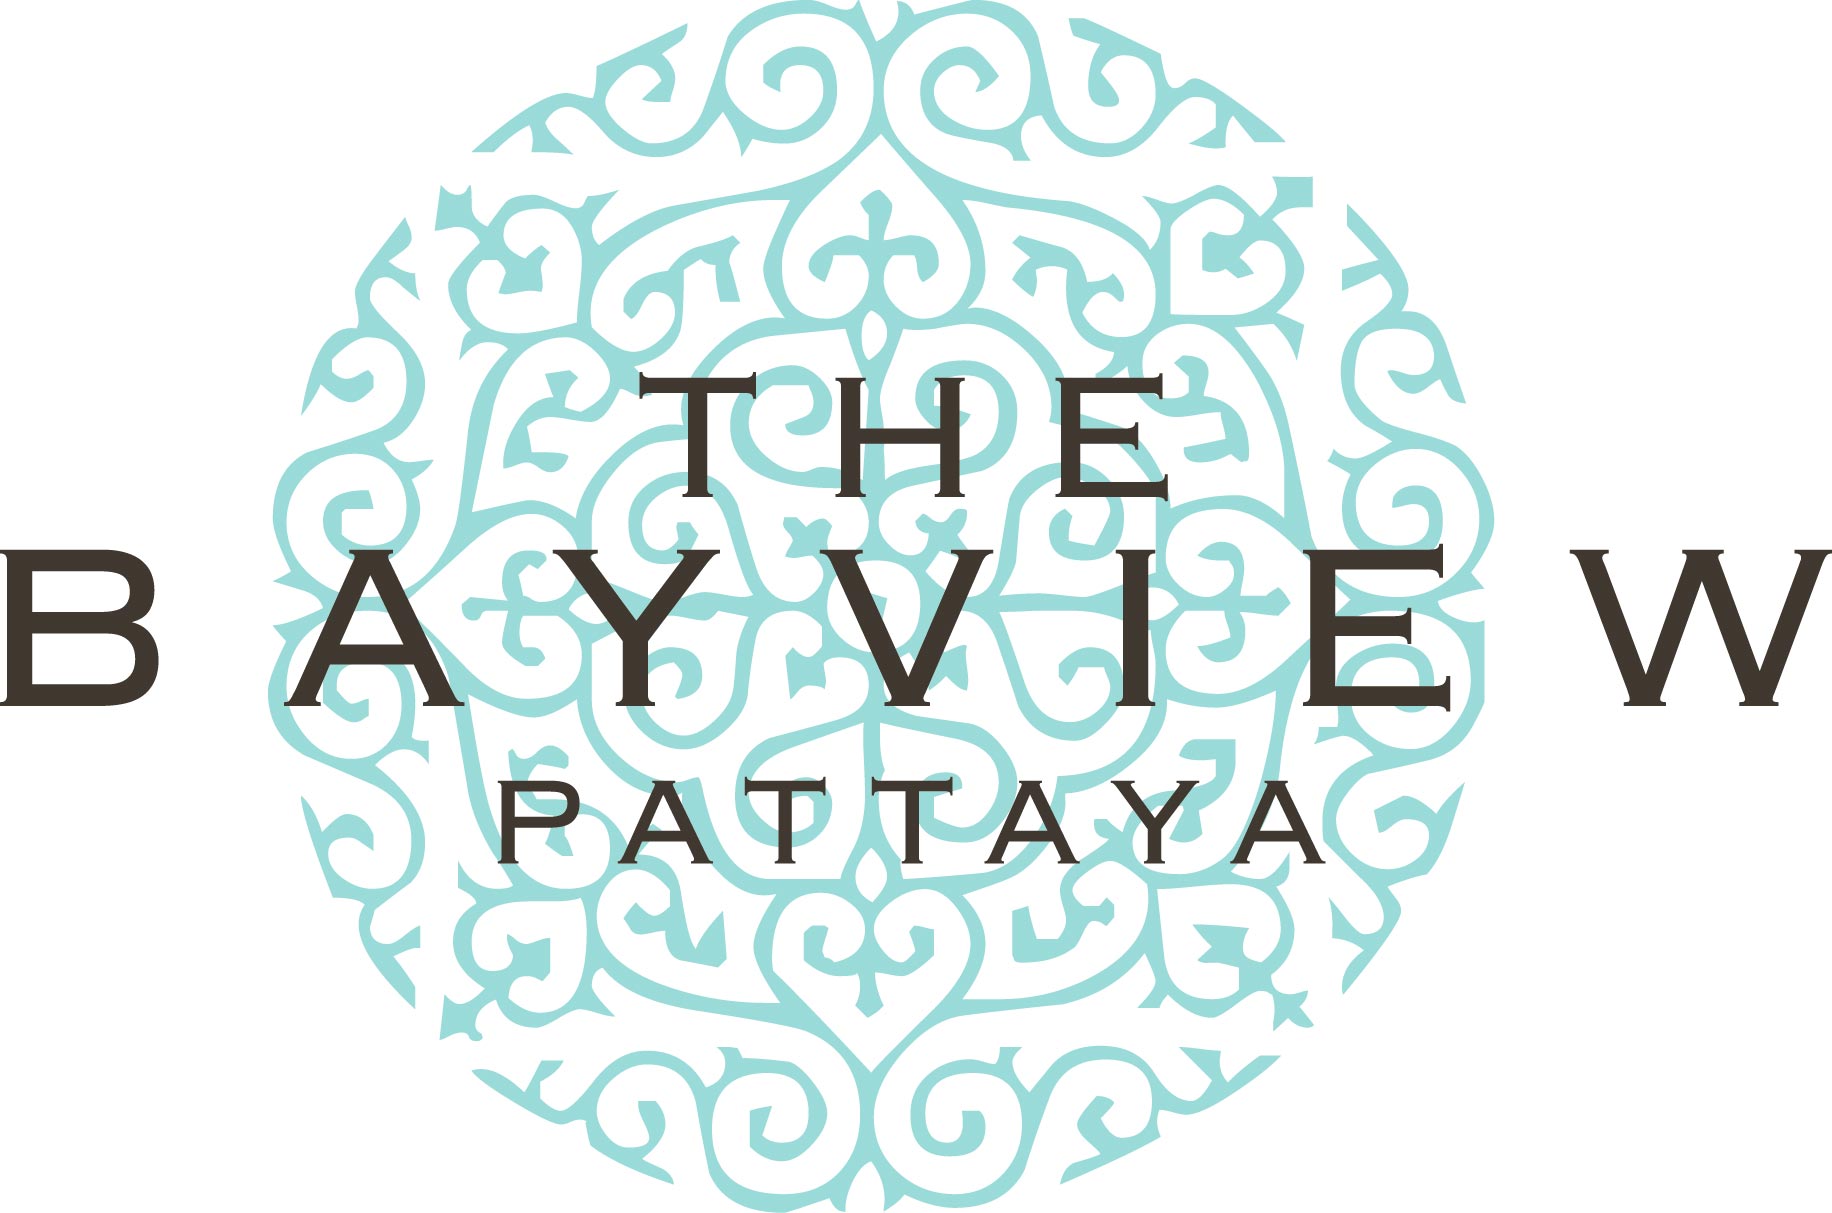 THE BAYVIEW, PATTAYA